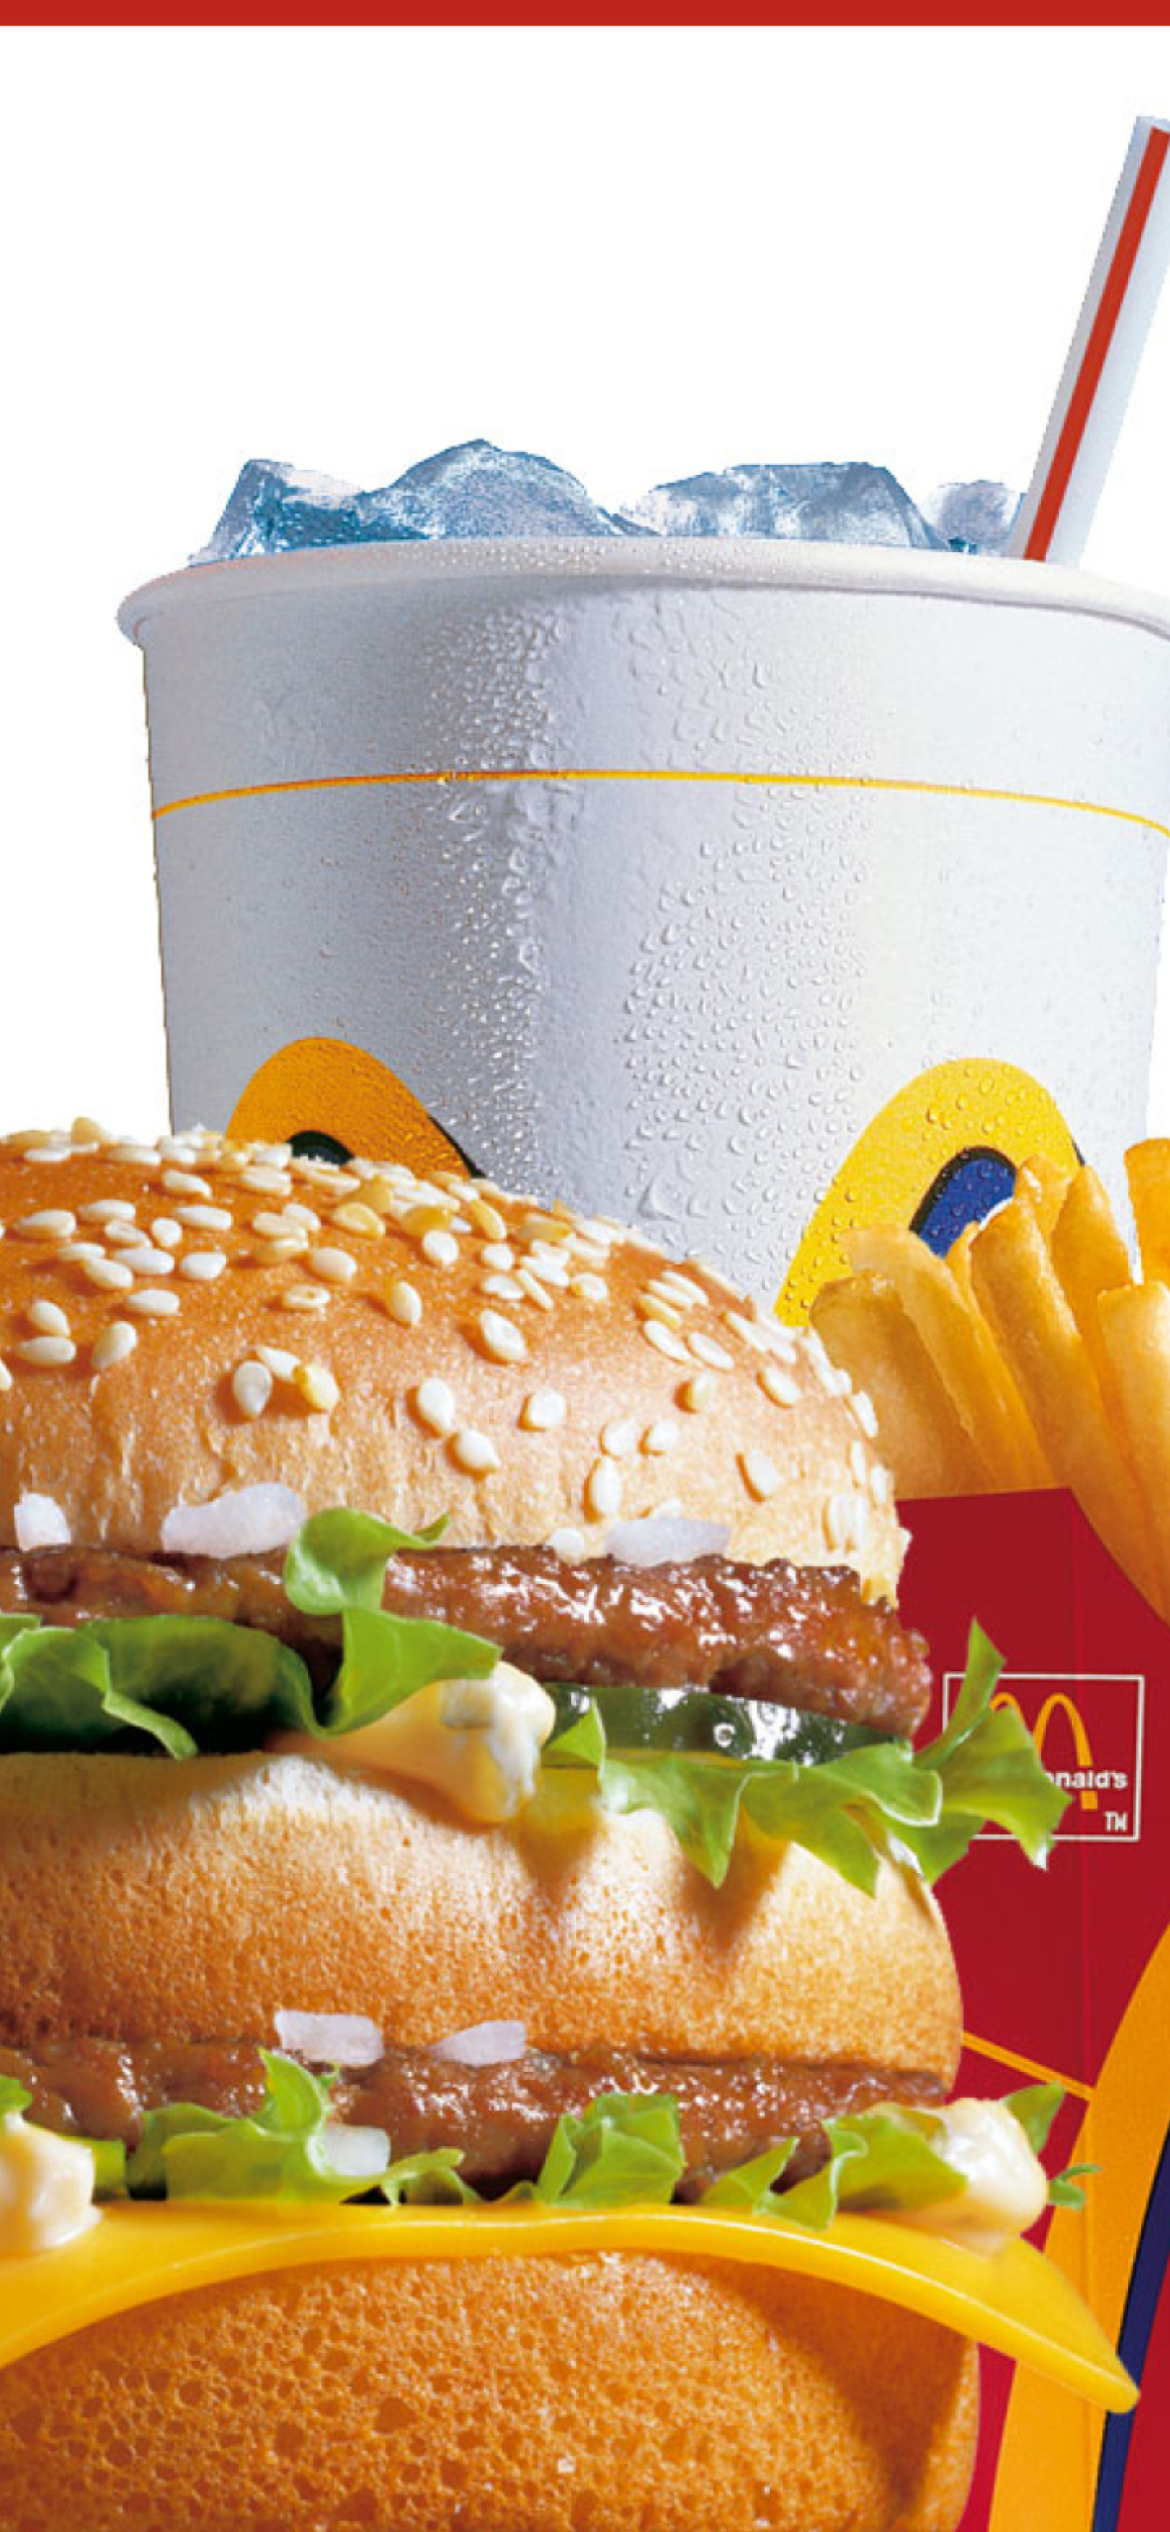 McDonalds: Big Mac wallpaper 1170x2532